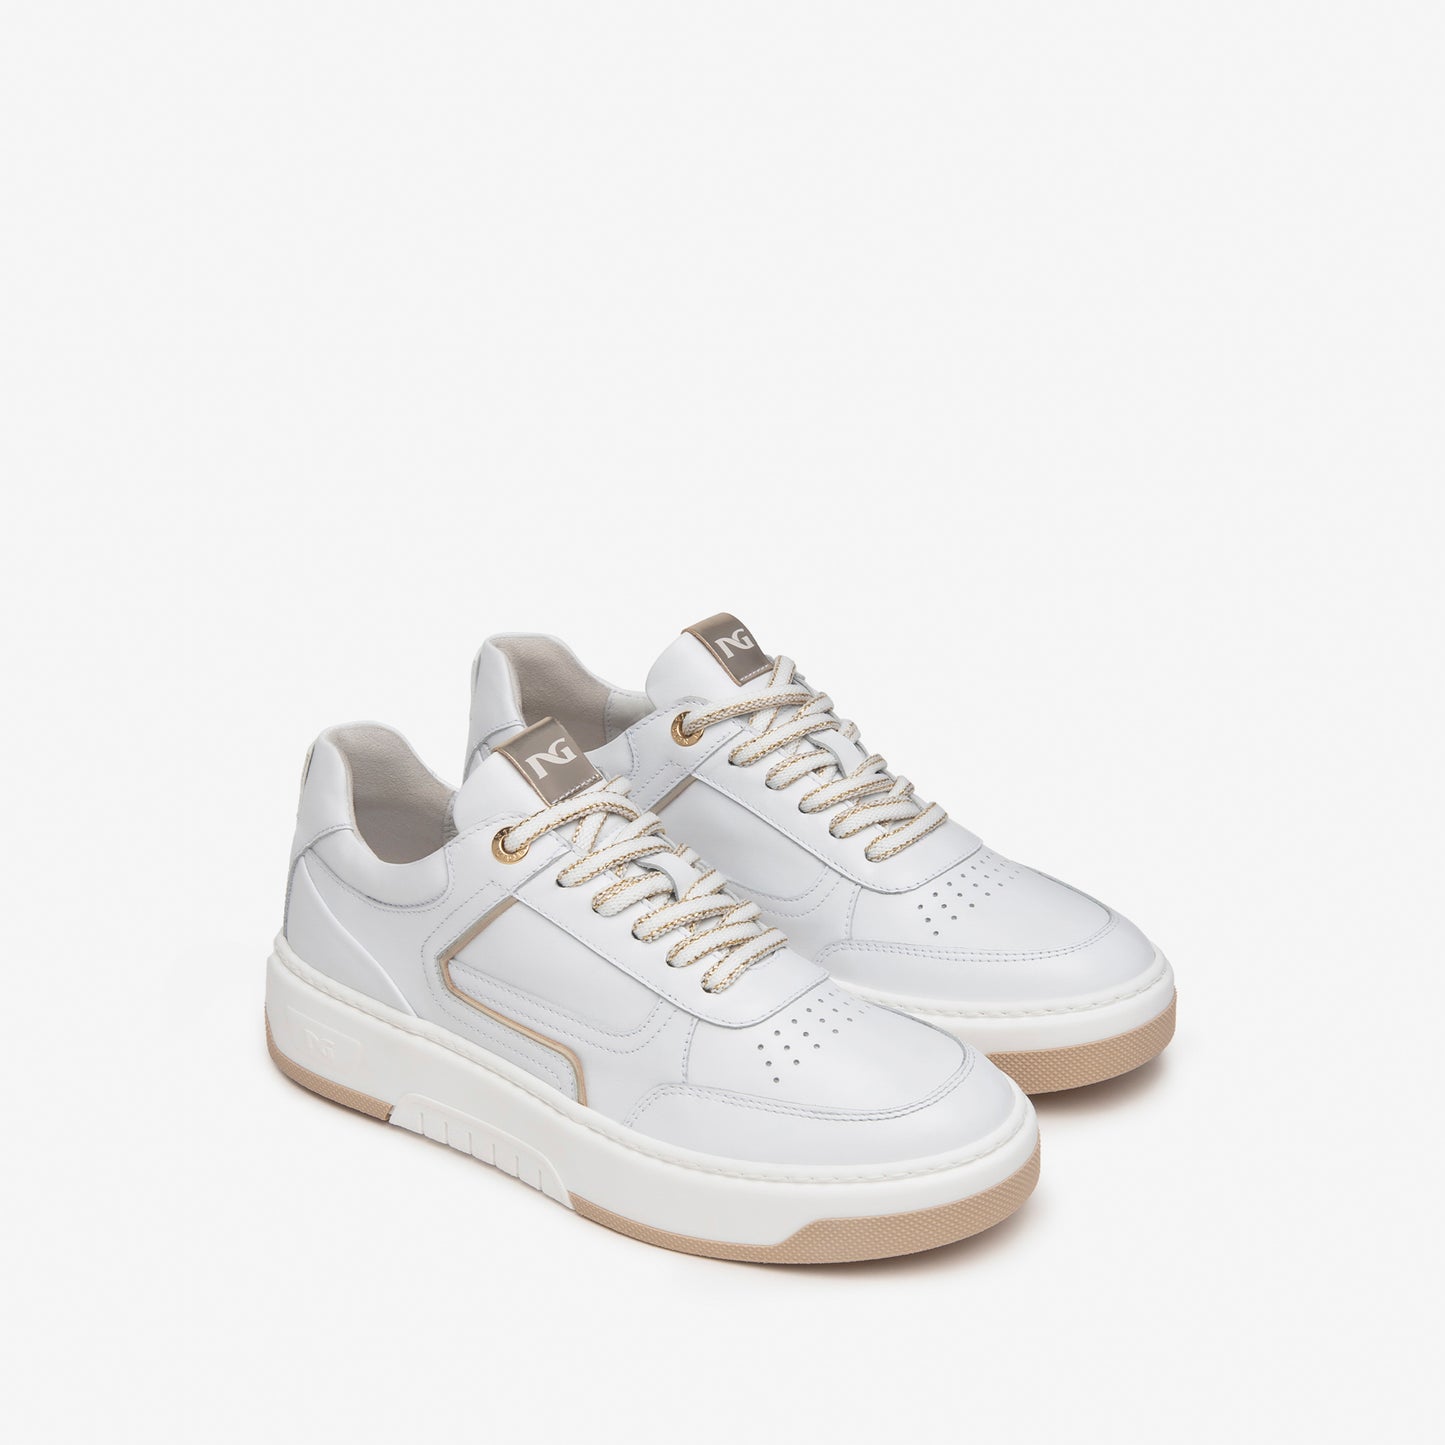 Nero Giardini White Leather Sneaker